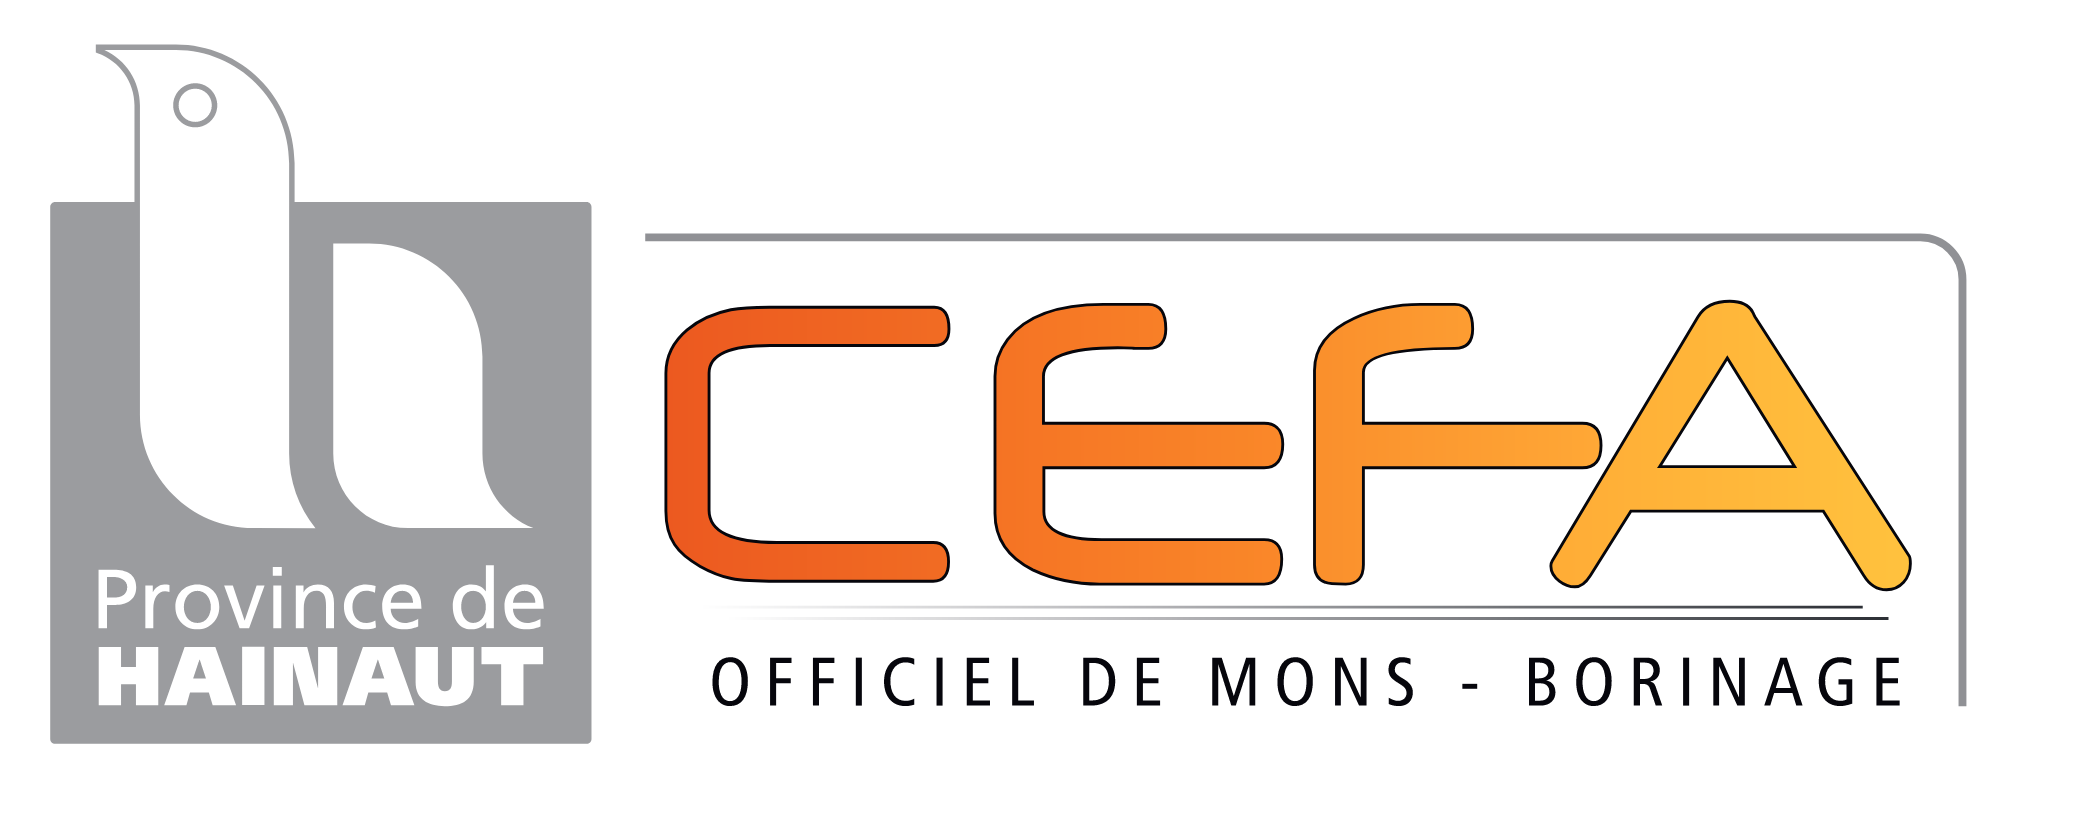 logo CEFA 2022 v01 www